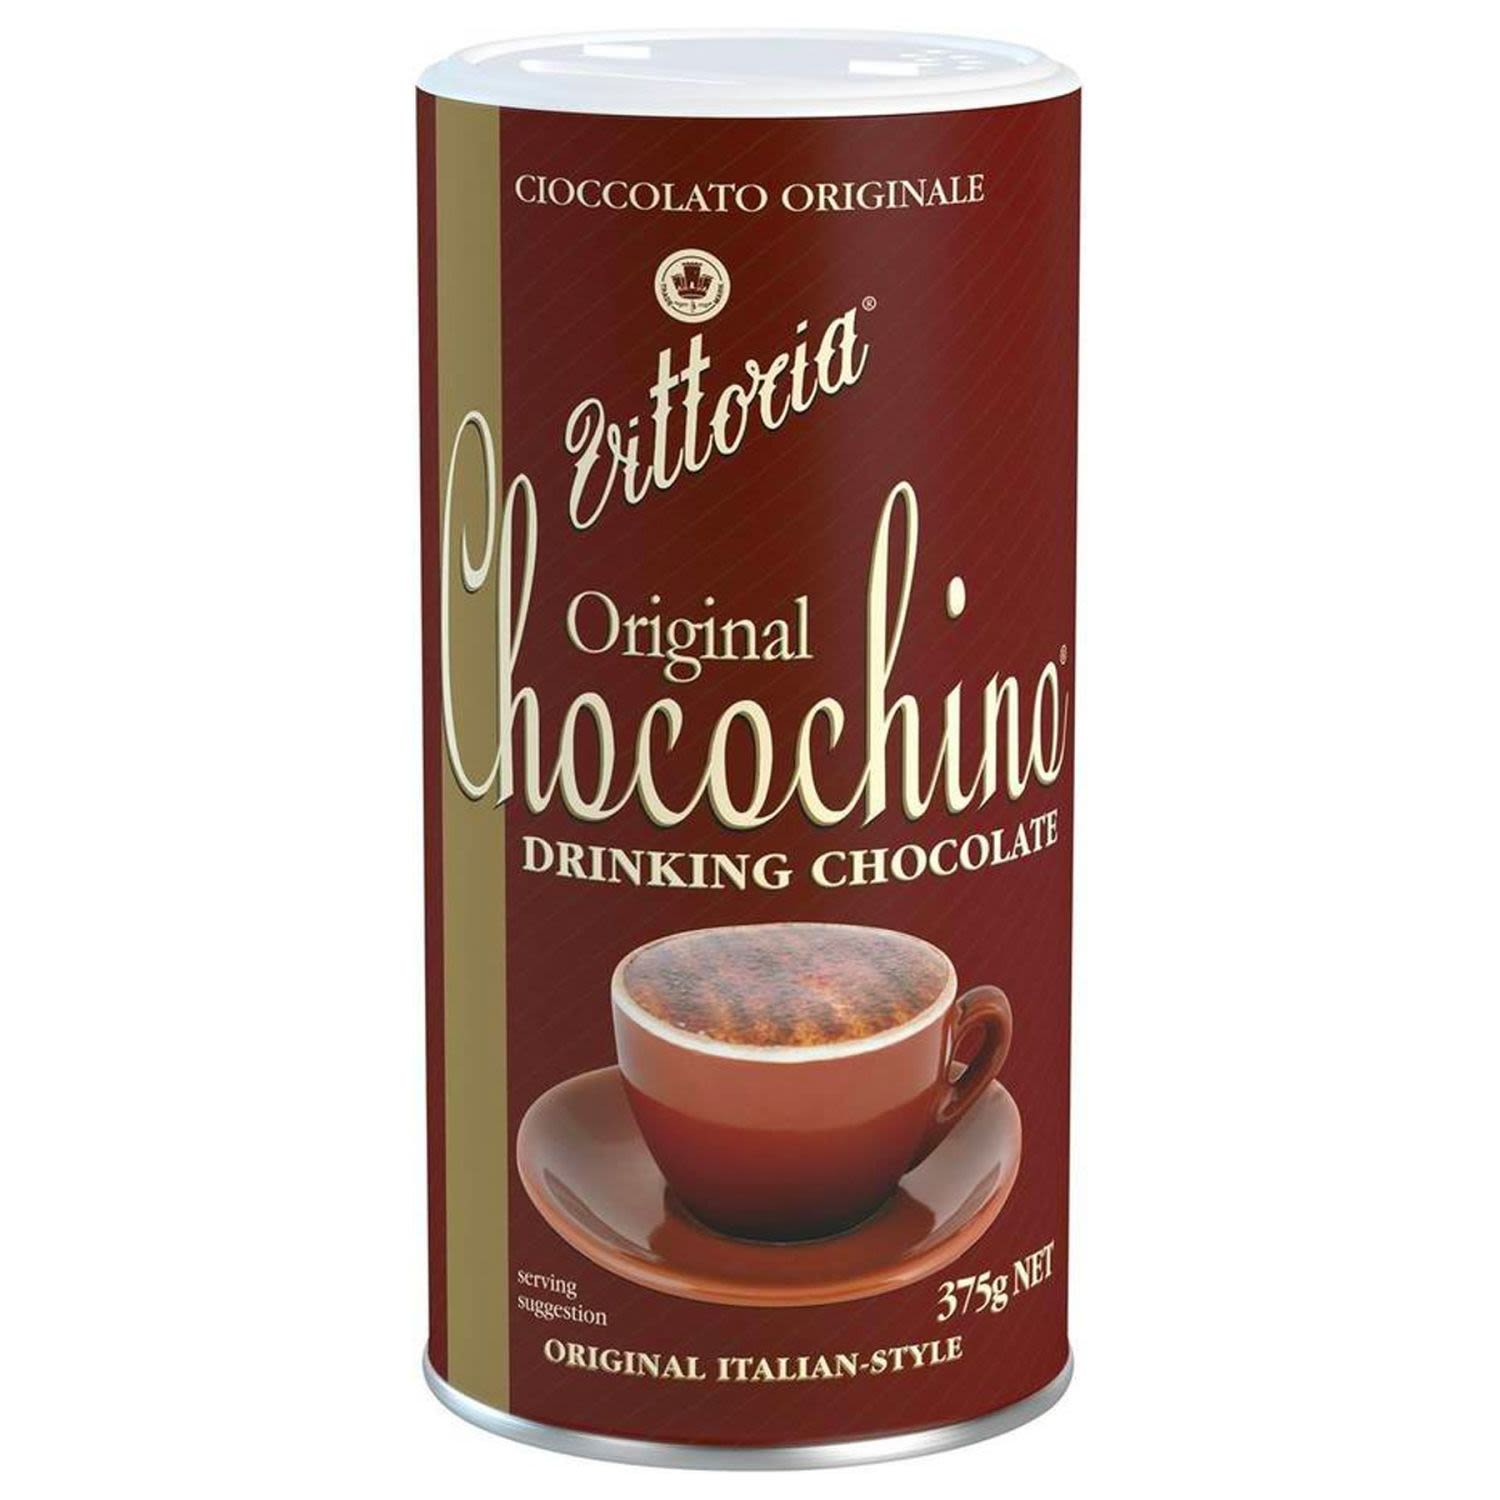 Vittoria Chocochino Chocolate Original 375gm